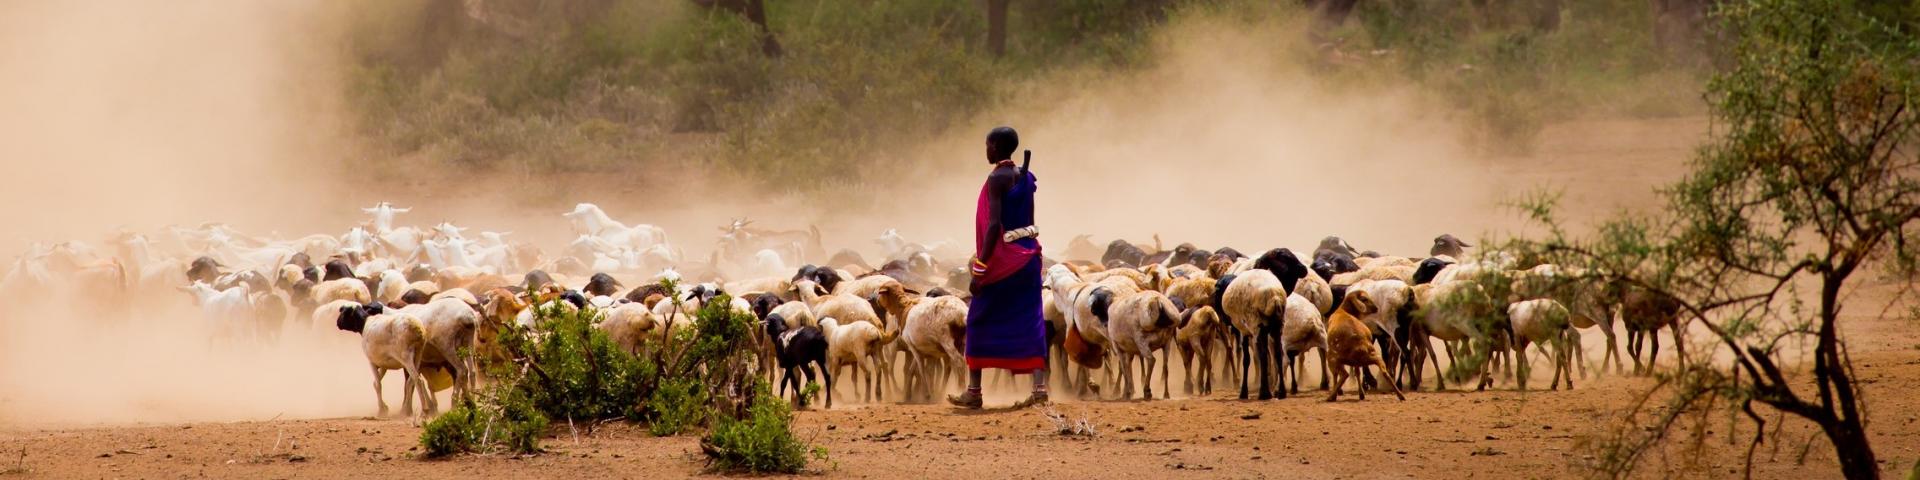 Z wizytą u Masajów - wspomnienia z Kenii i Tanzanii